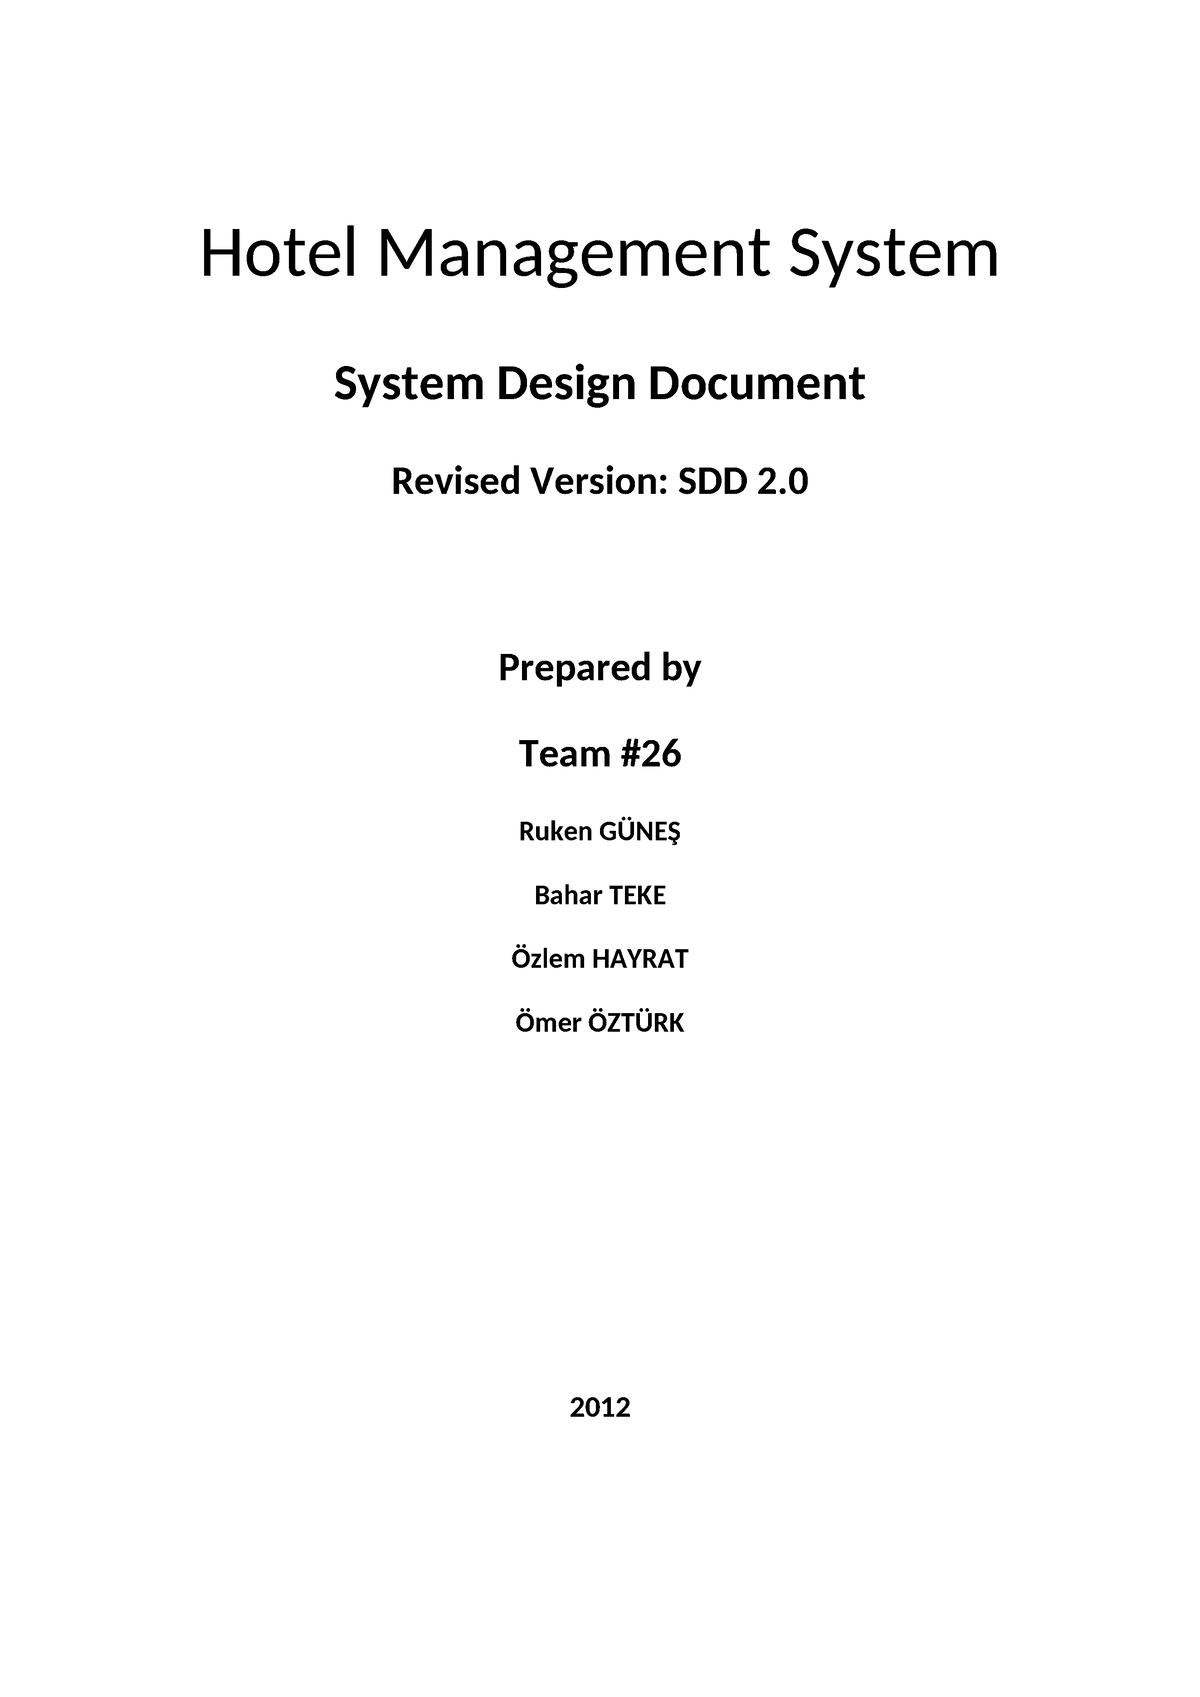 Hotel Management System - System Design Document Revised Version: SDD 2 ...